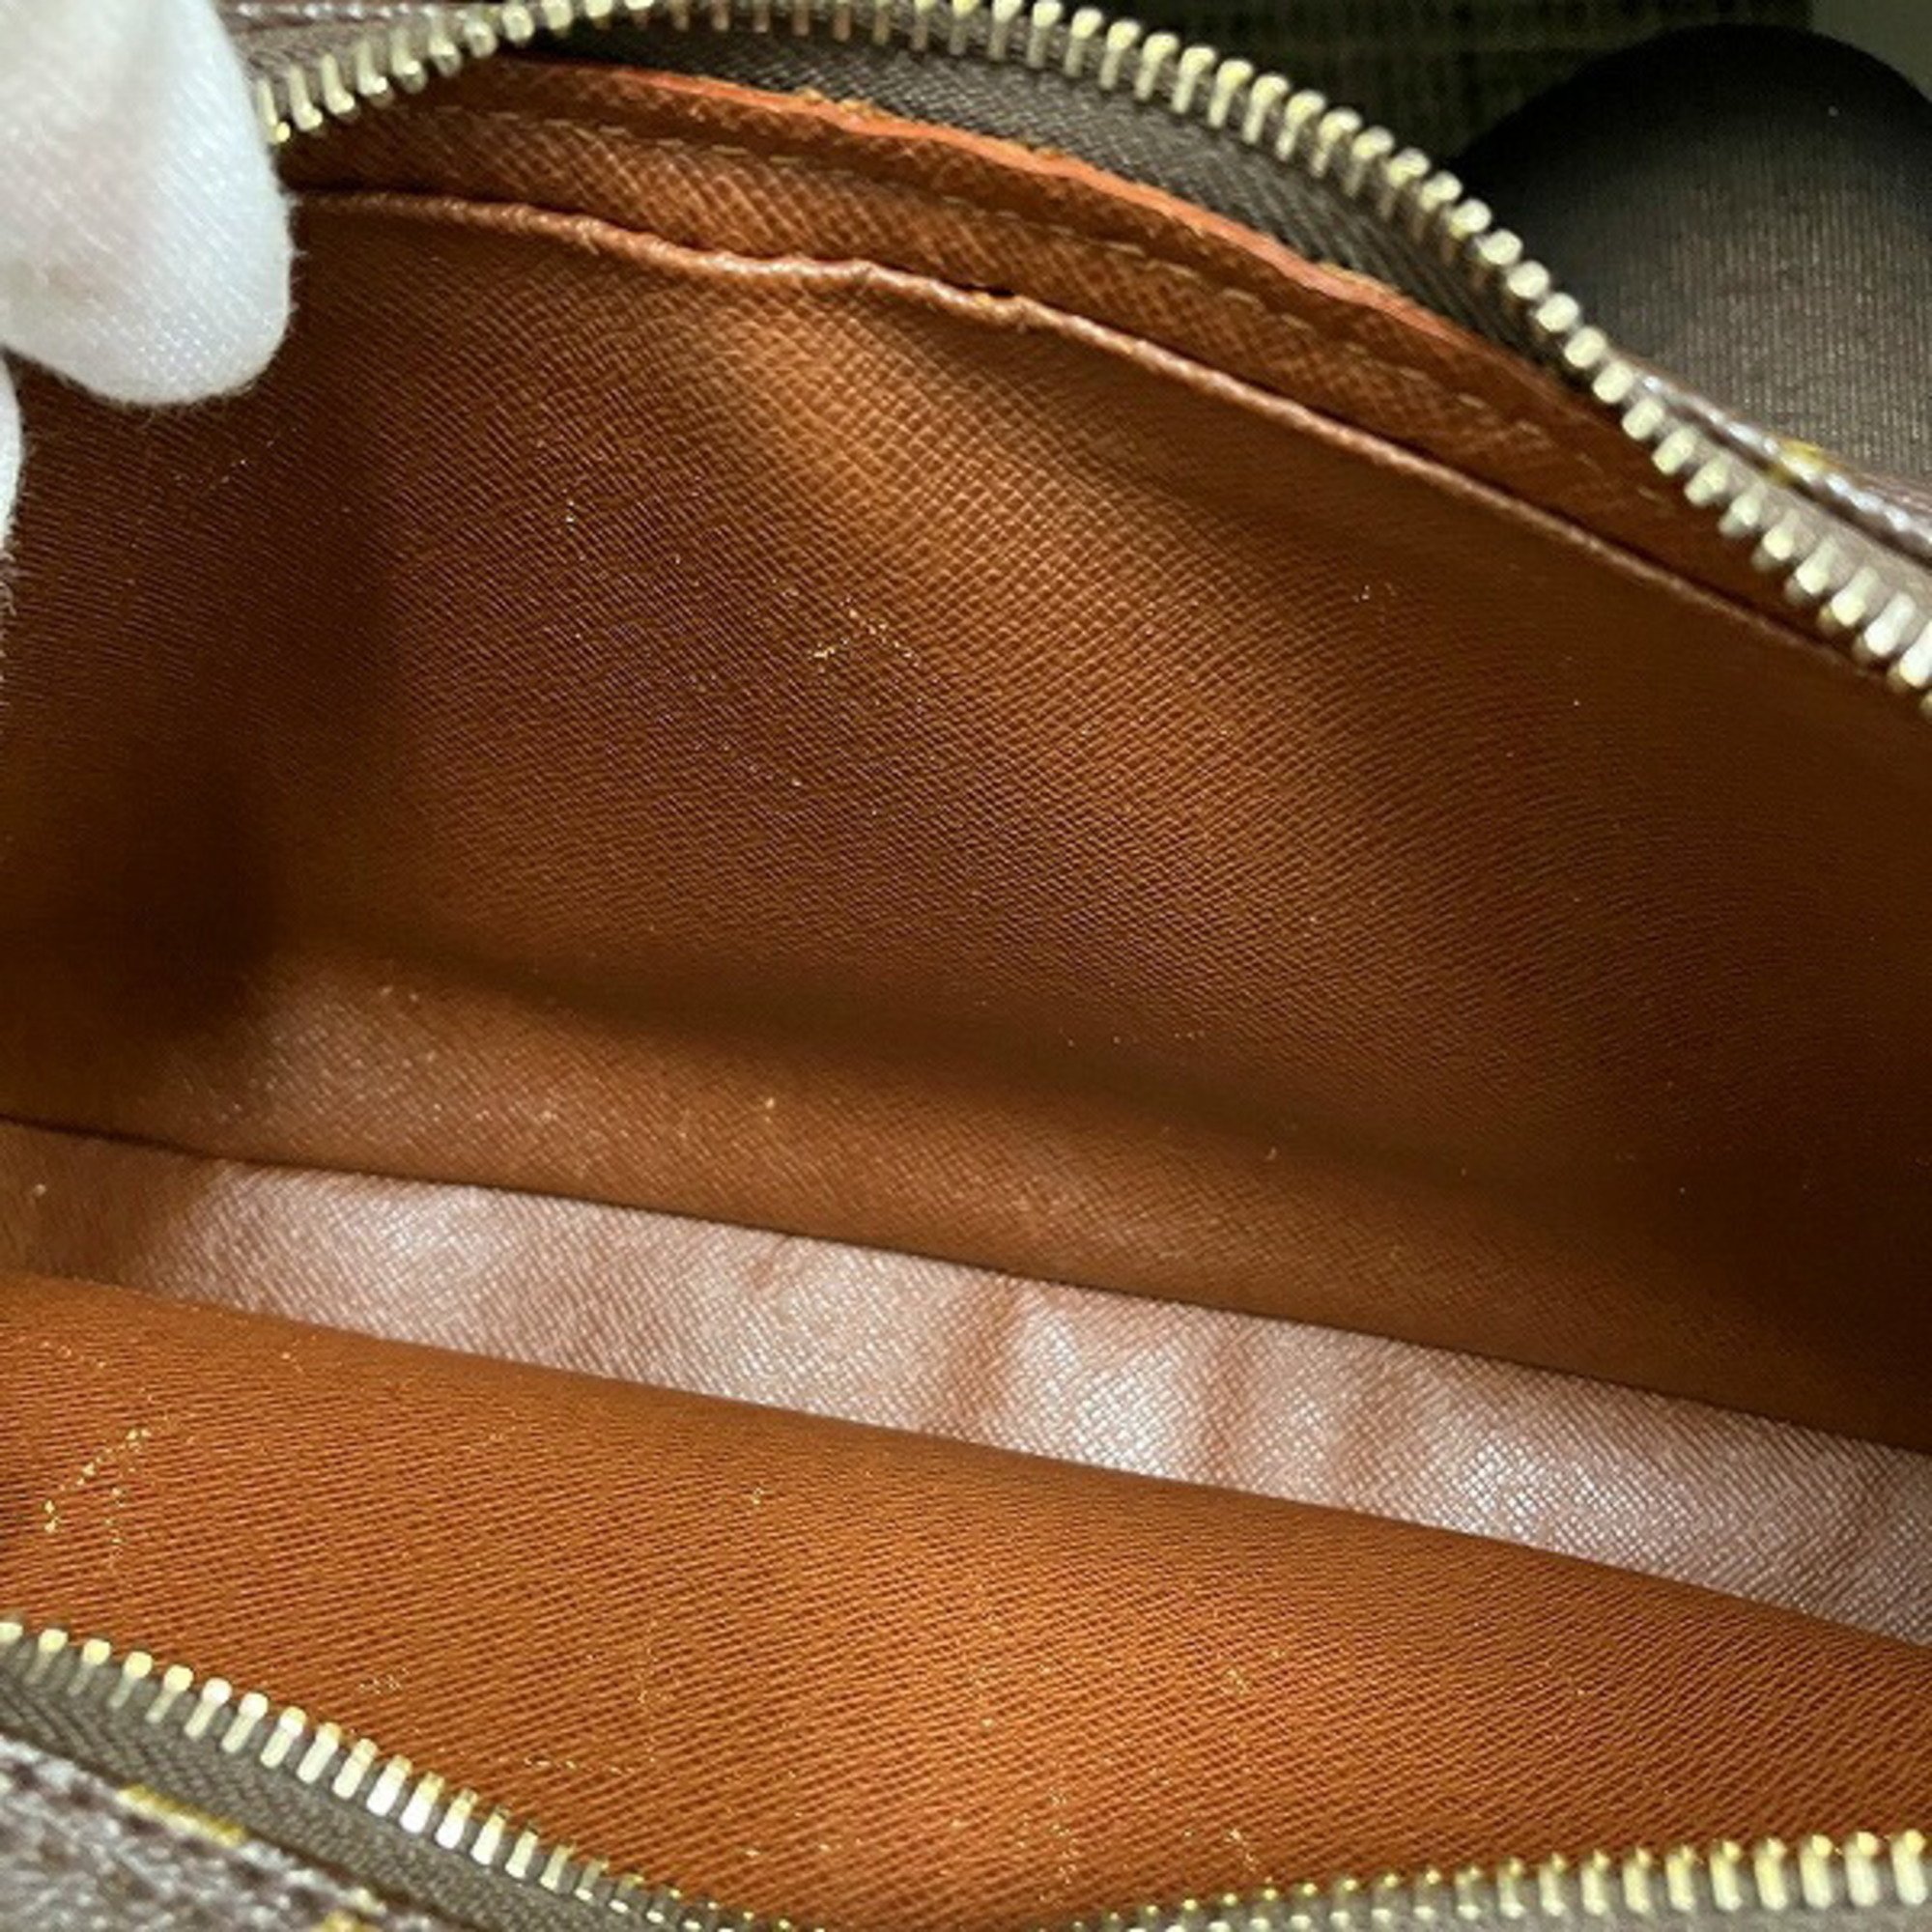 Louis Vuitton Monogram Nile M45244 Bag Shoulder Women's